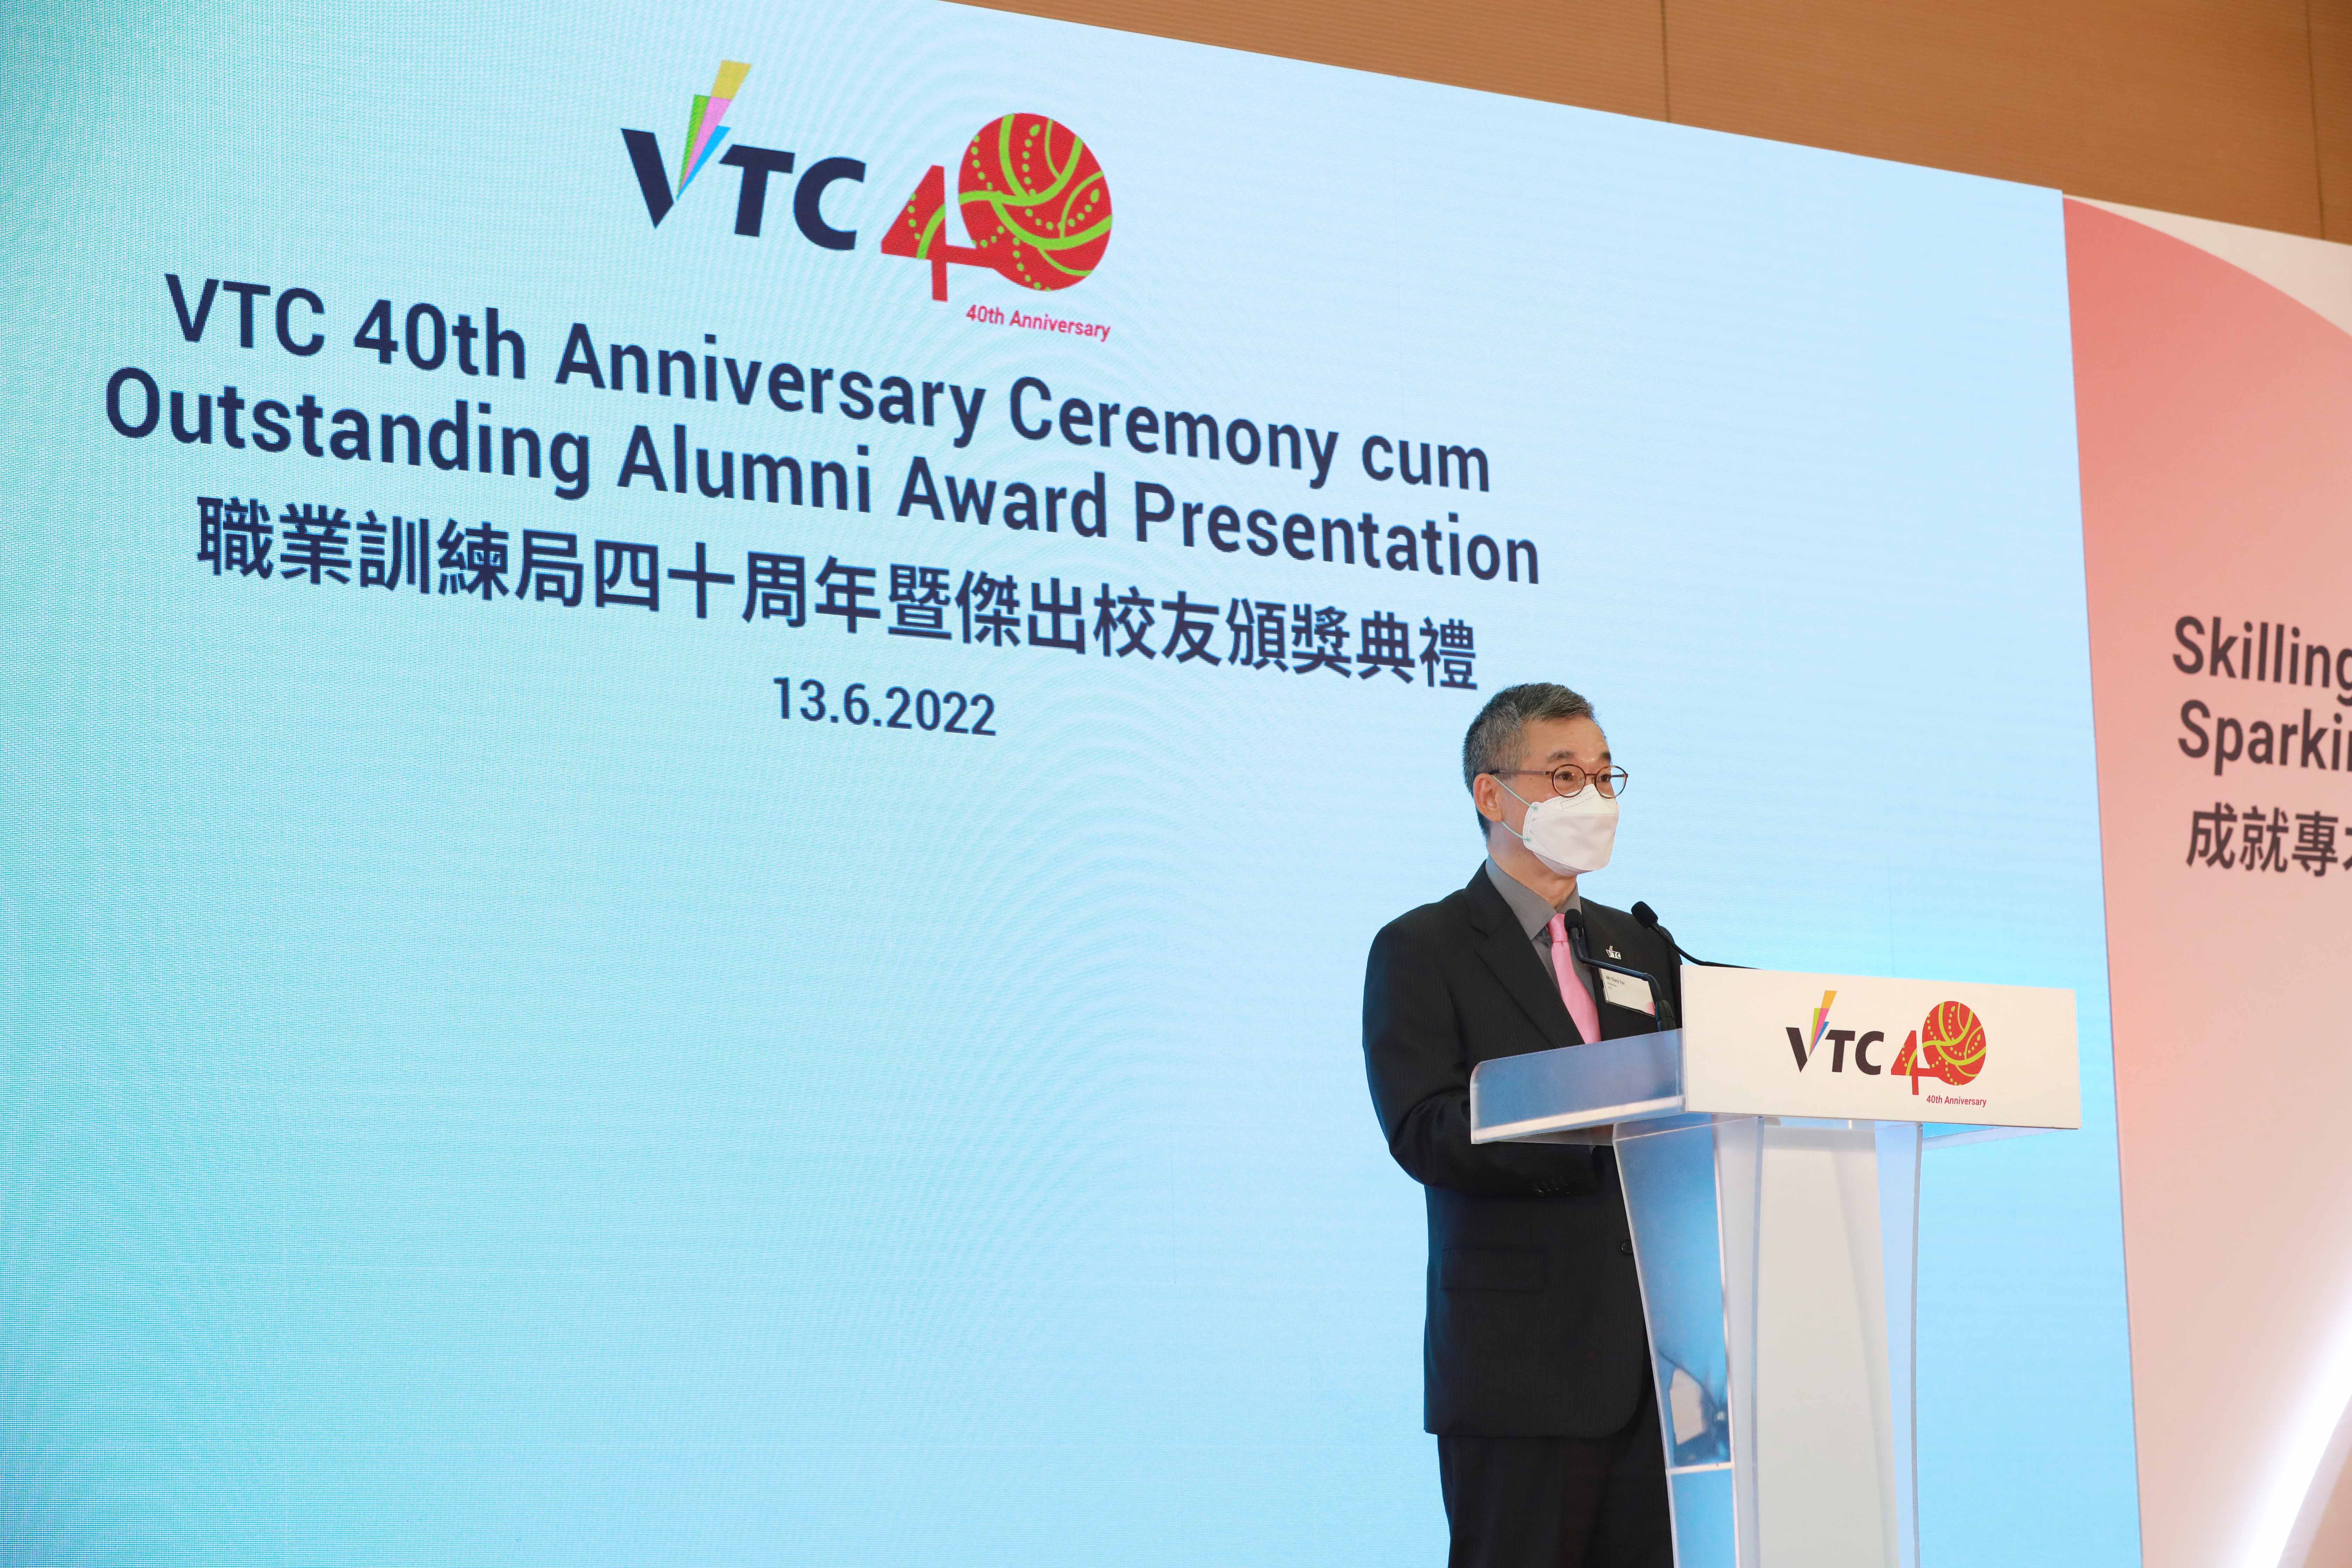 VTC 40 周年暨杰出校友颁奖典礼
成就专才 启发创新